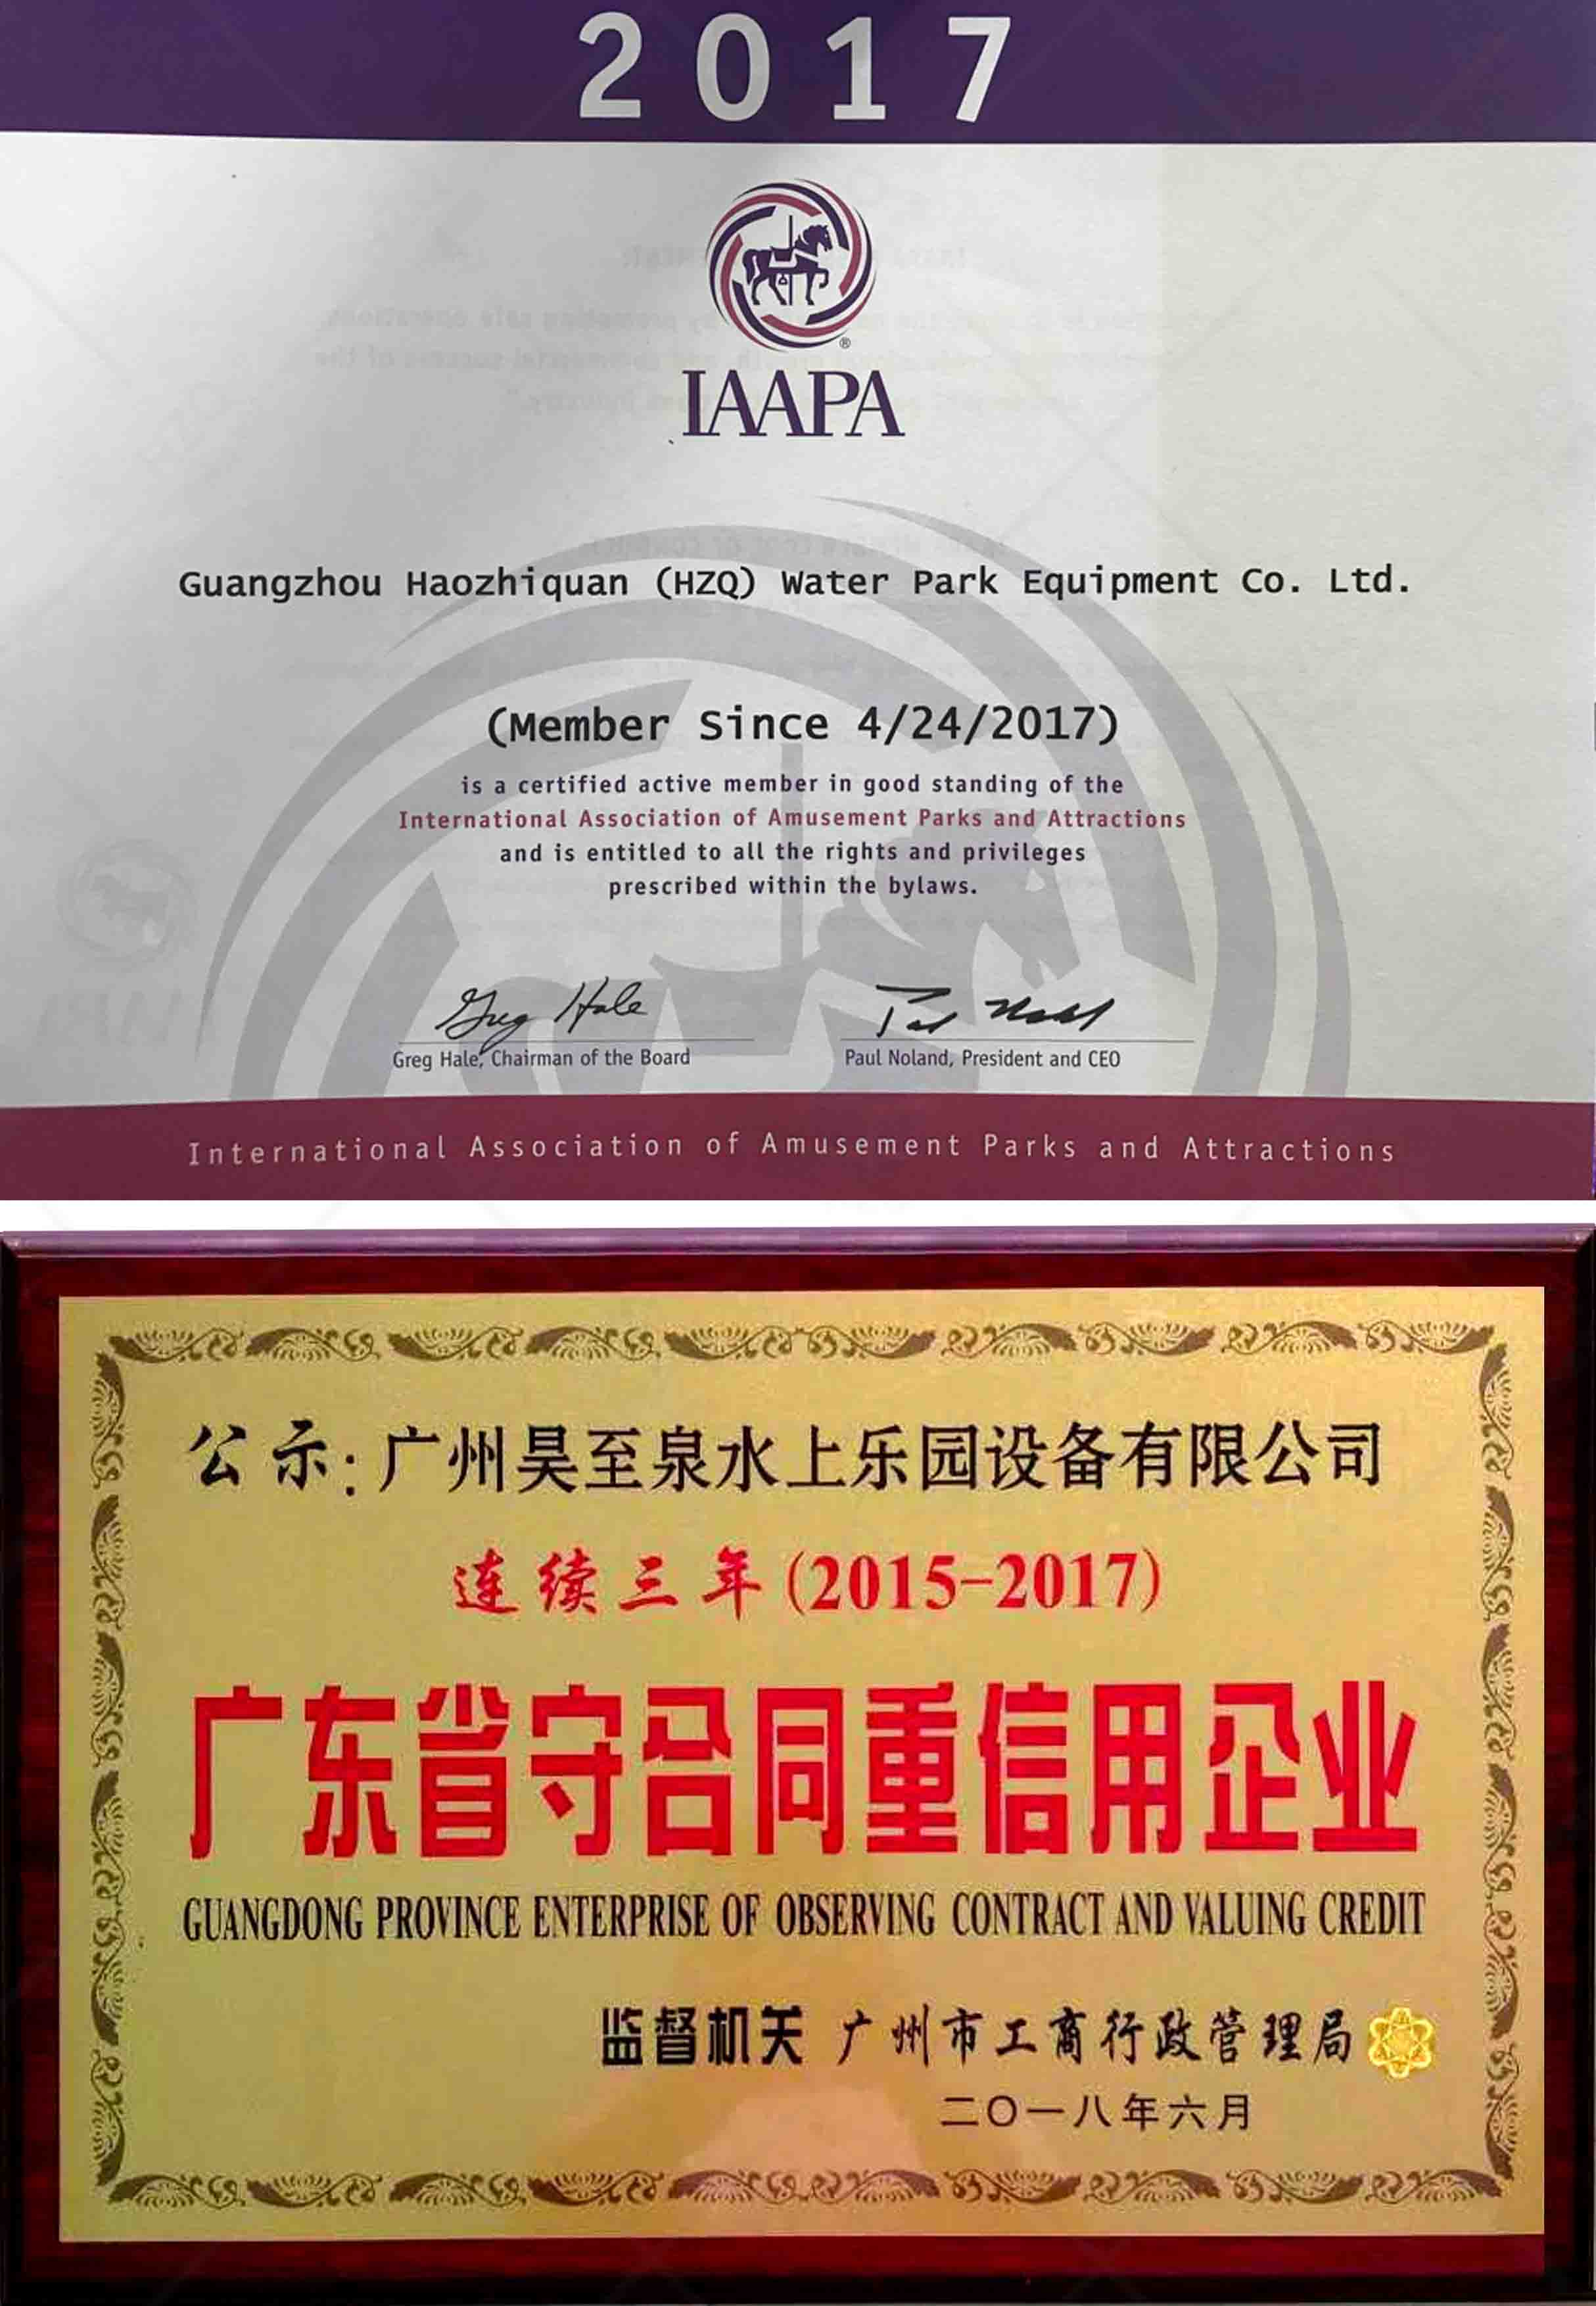 國際IAAPA證/廣東重信用企業